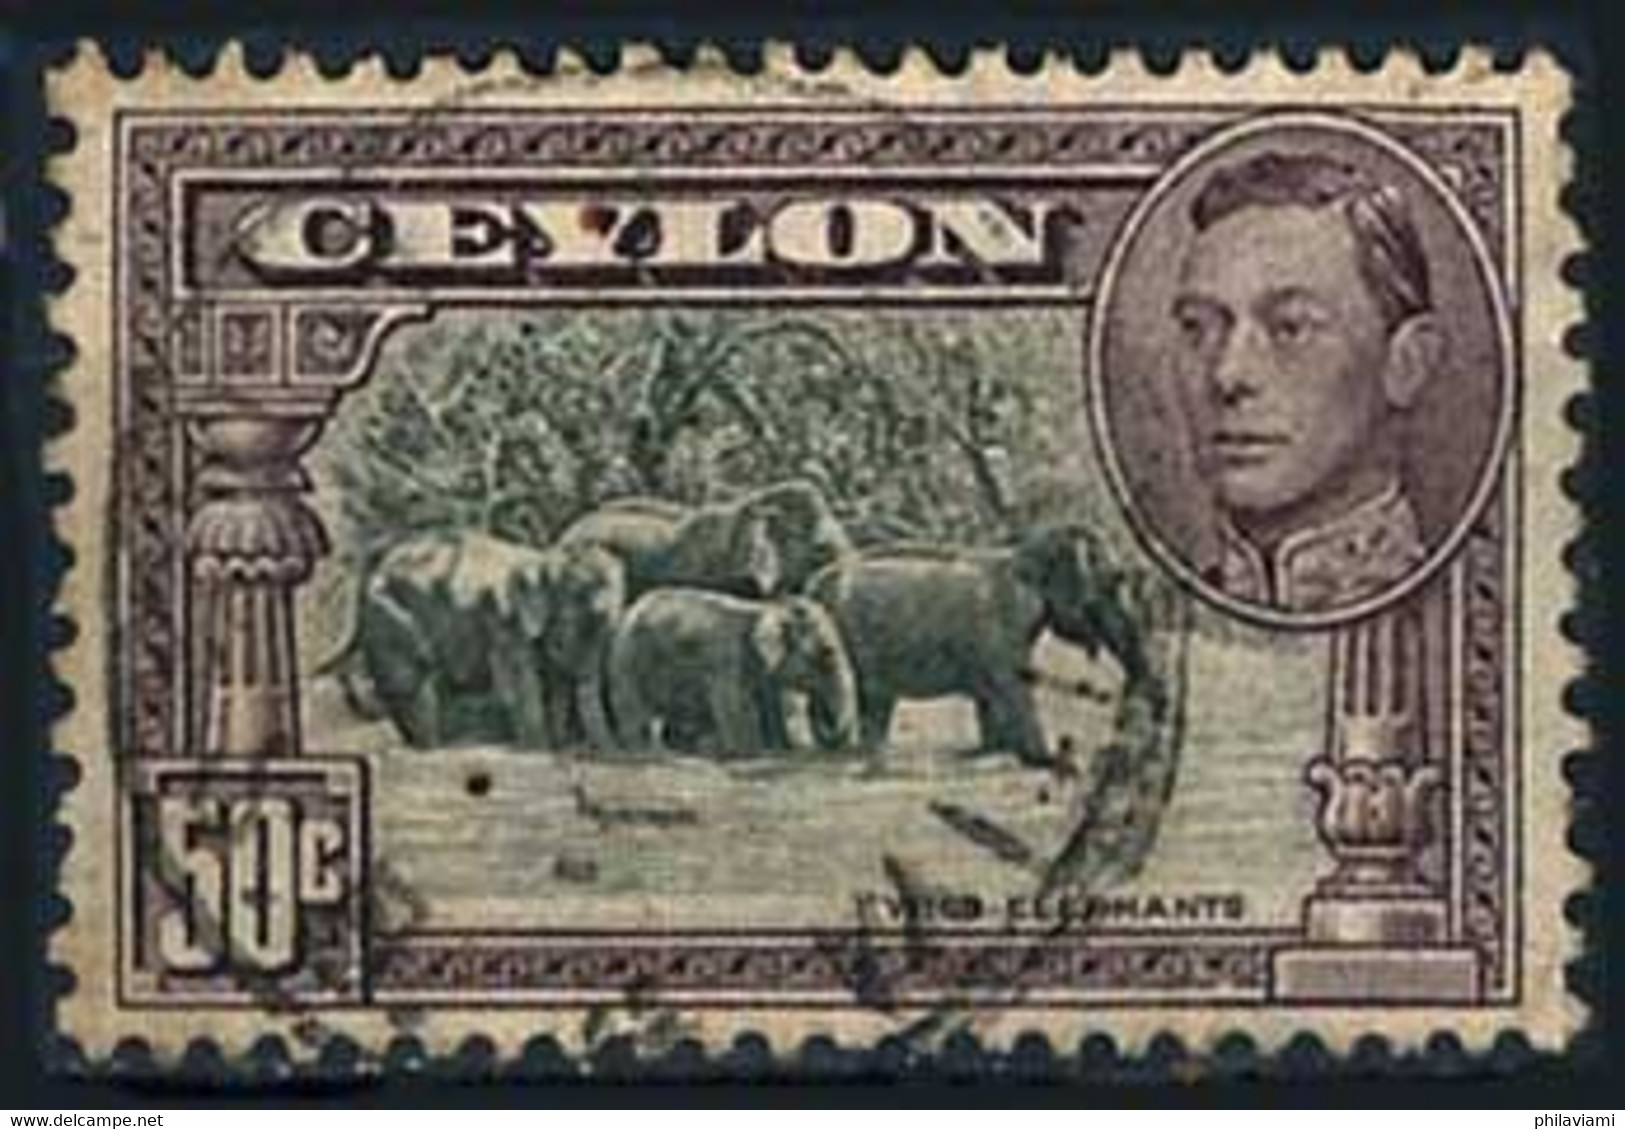 Ceylan Ceylon 1937 Eléphants Elefant  (Yvert 260, Michel 239) - Pipistrelli